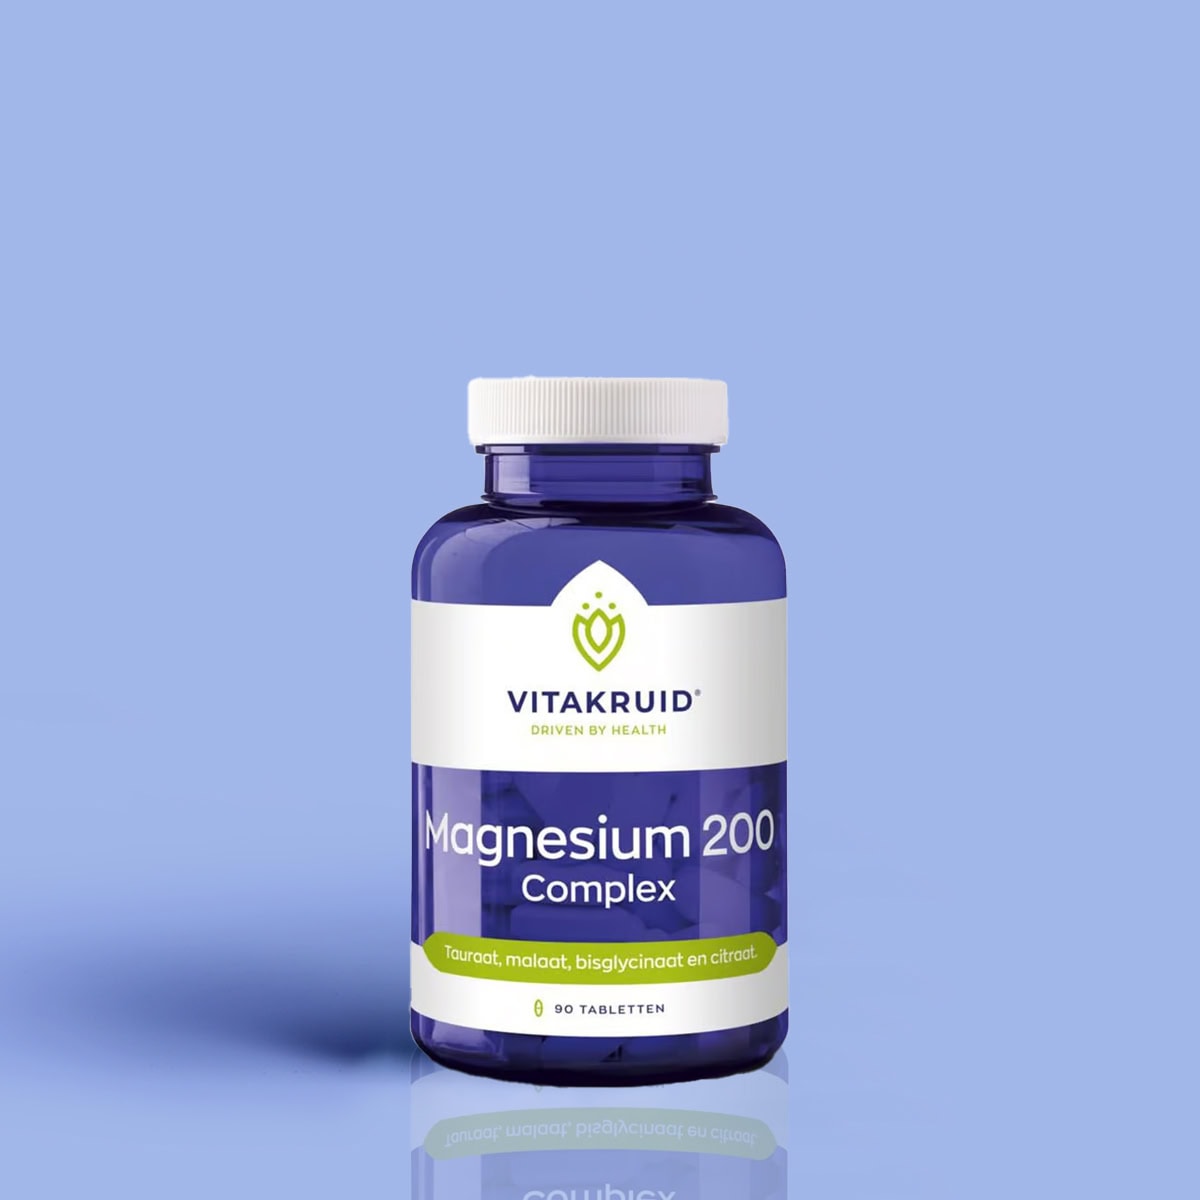 Vitakruid Magnesium 200 complex